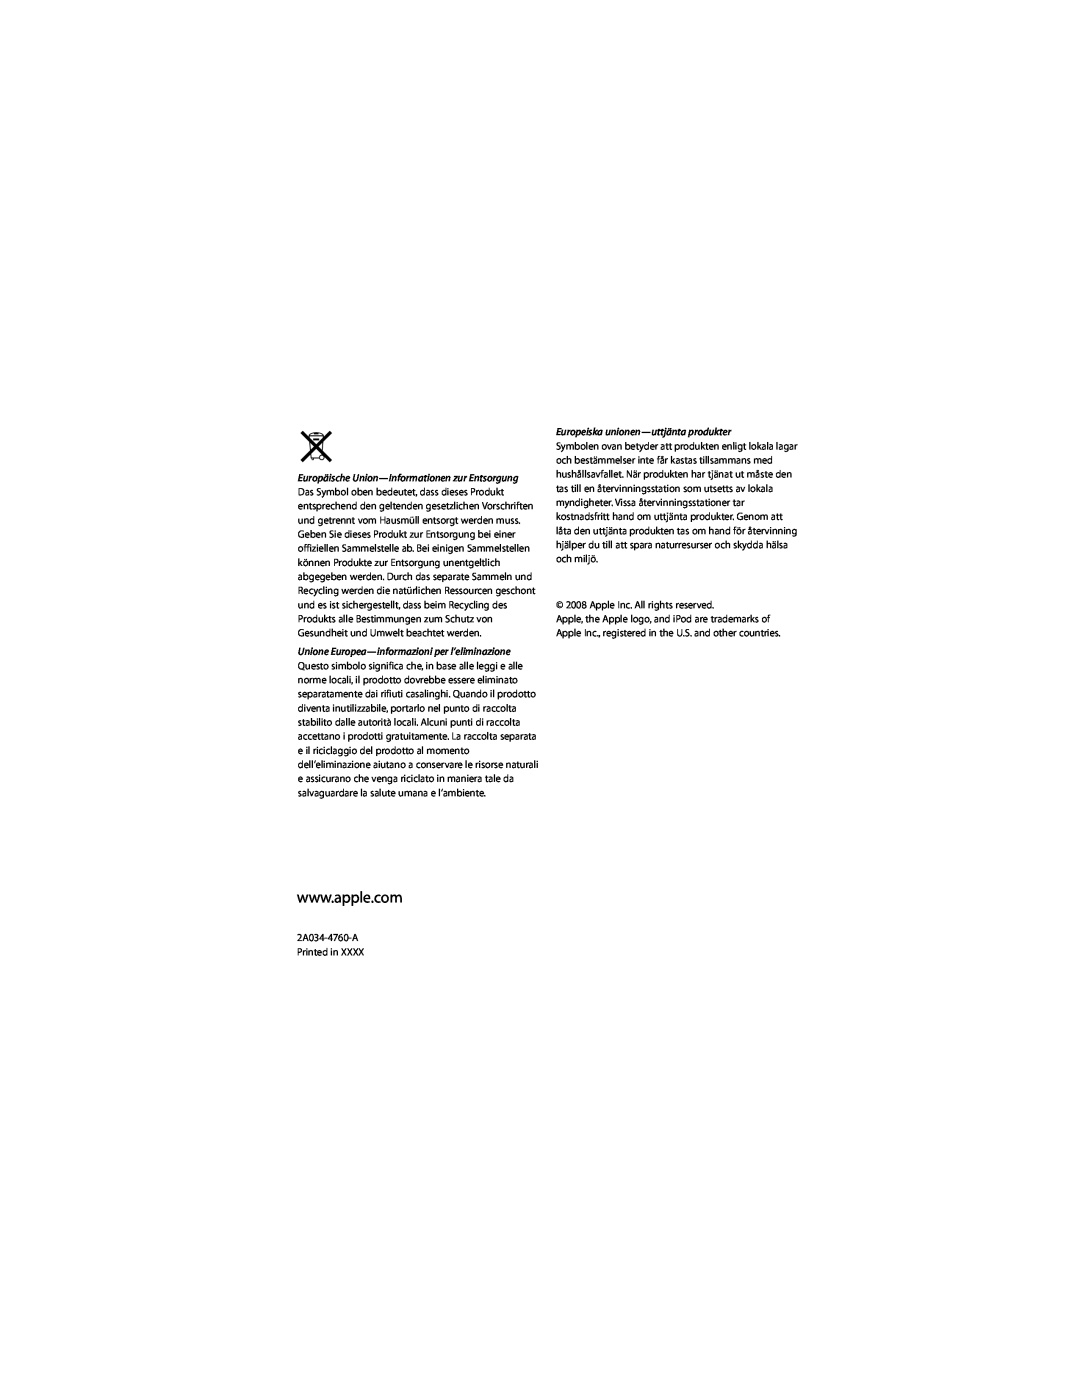 Apple 2A034-4760-A manual Europäische Union-Informationen zur Entsorgung, Unione Europea-informazioni per l’eliminazione 